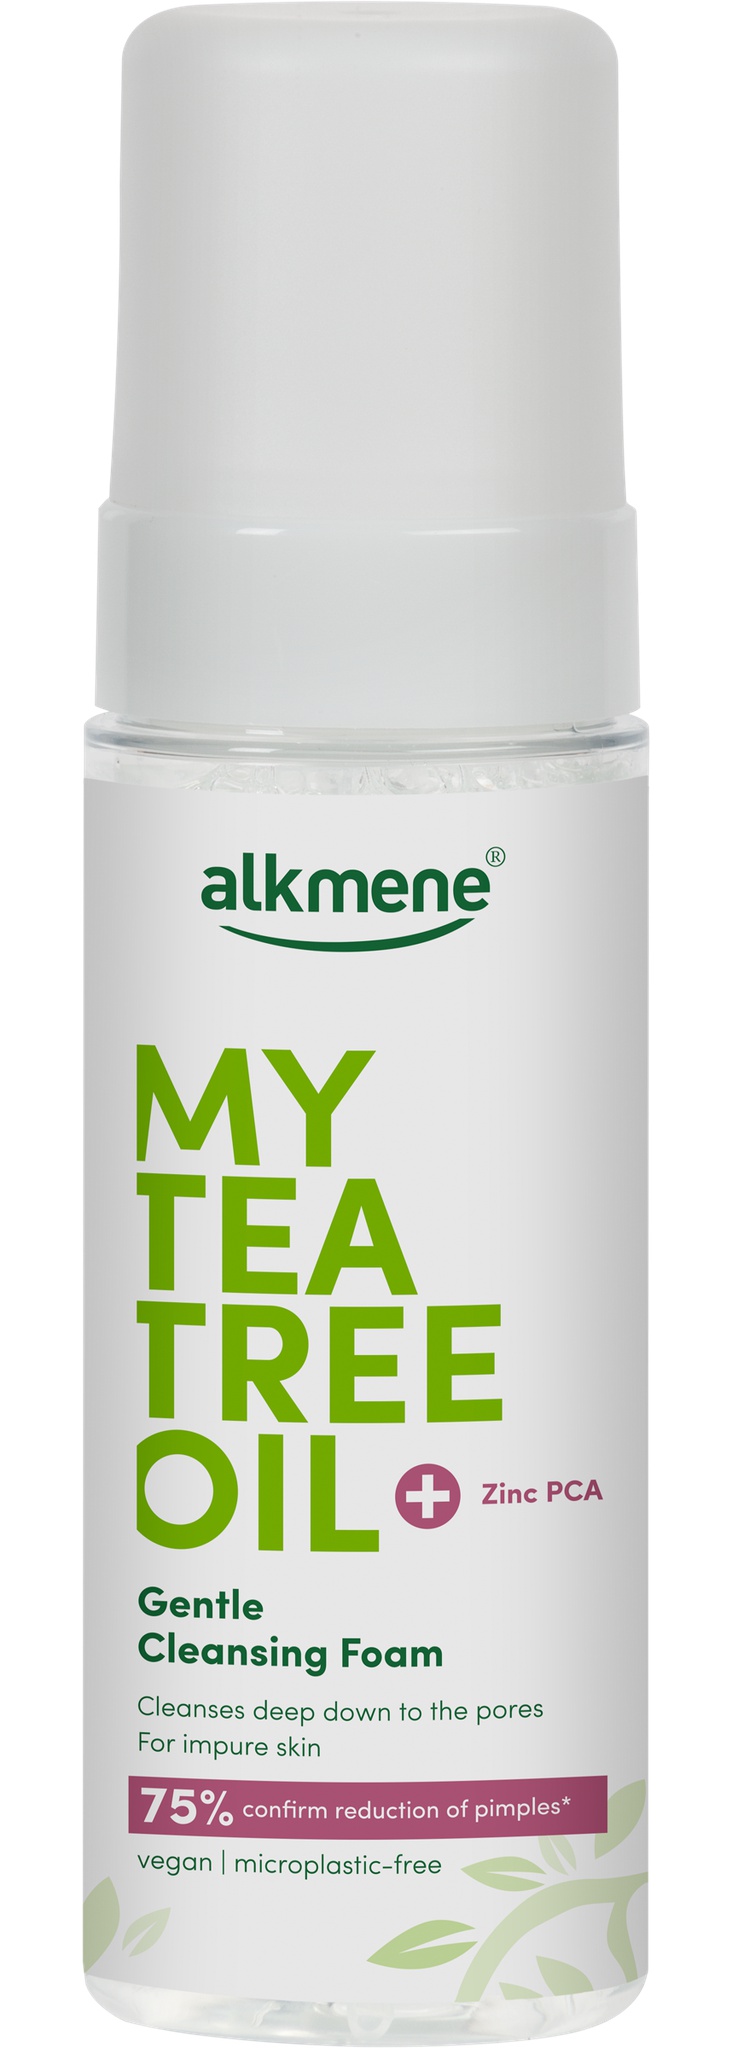 Alkmene My Tea Tree Oil Gentle Cleansing Foam